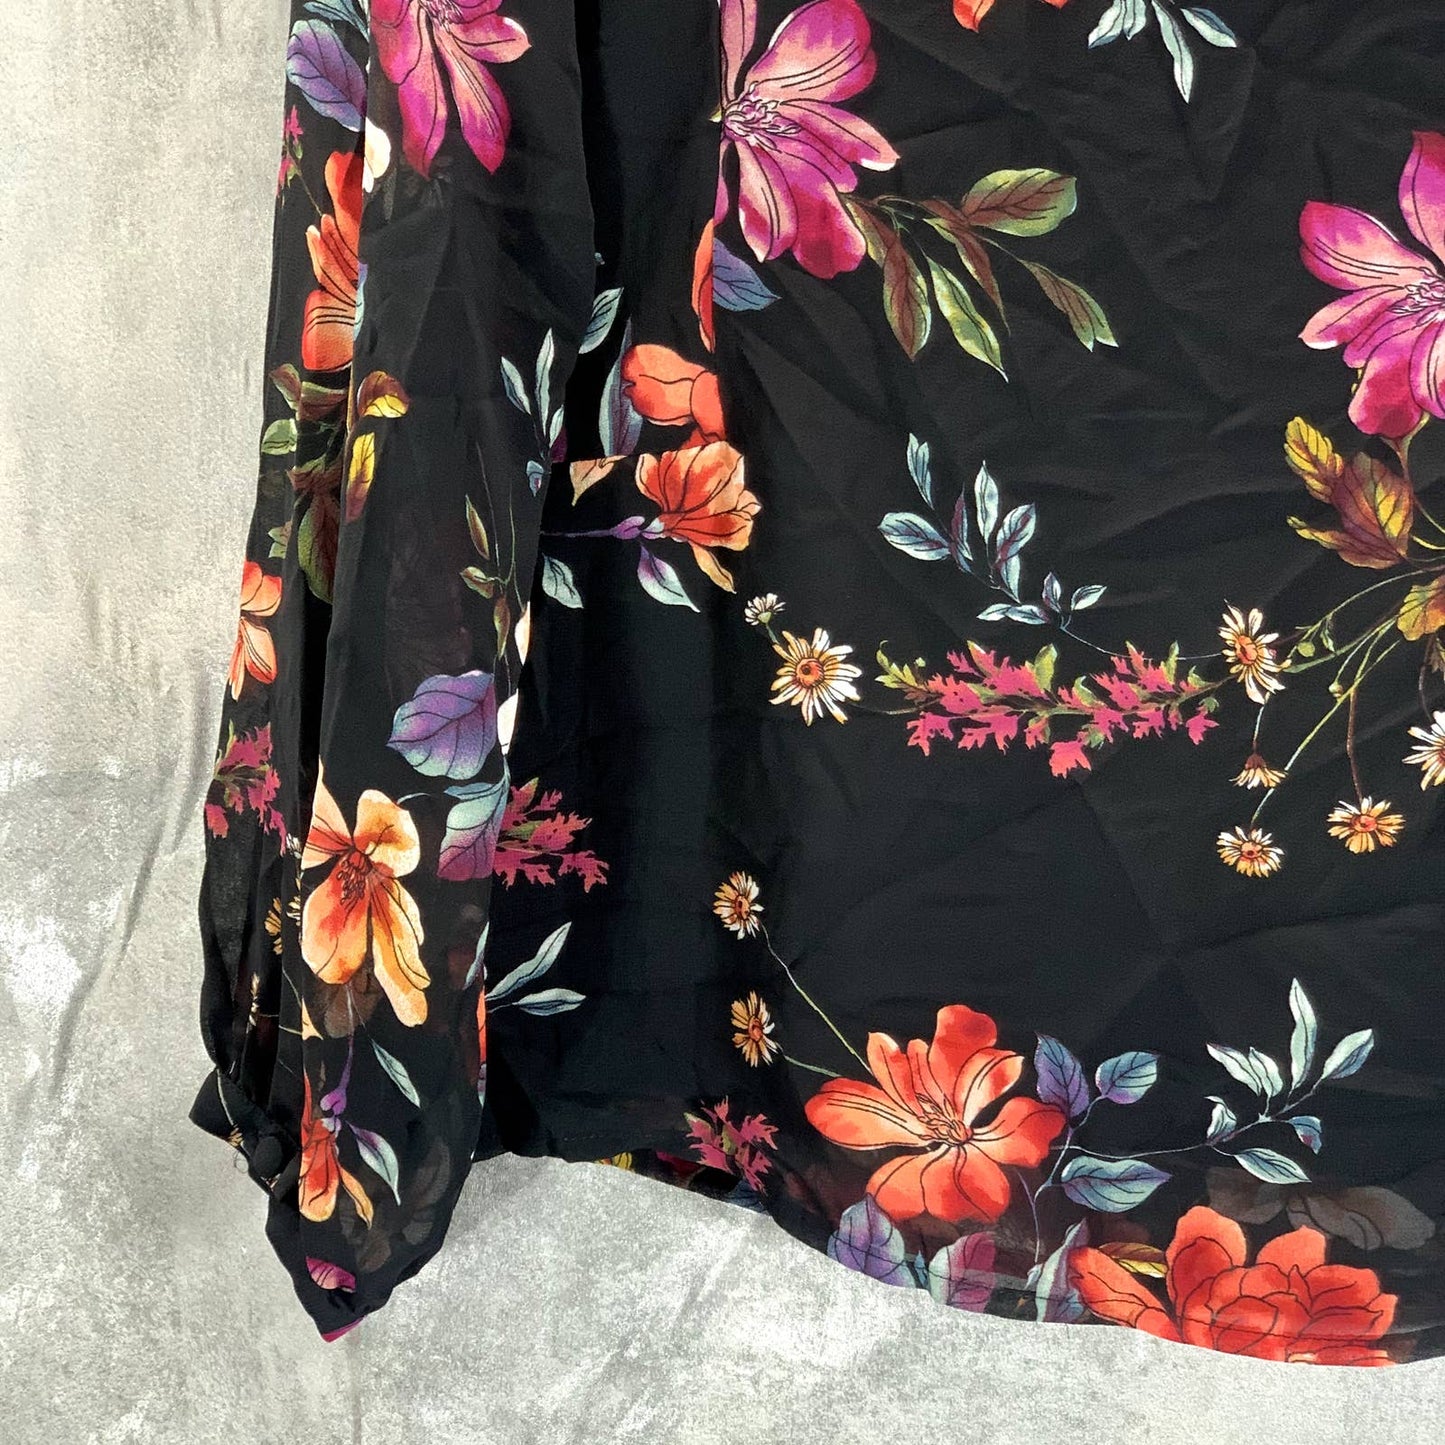 VINC CAMUTO Women's Rich Black Floral-Print Scoop-Neck Long-Sleeve Top SZ XS